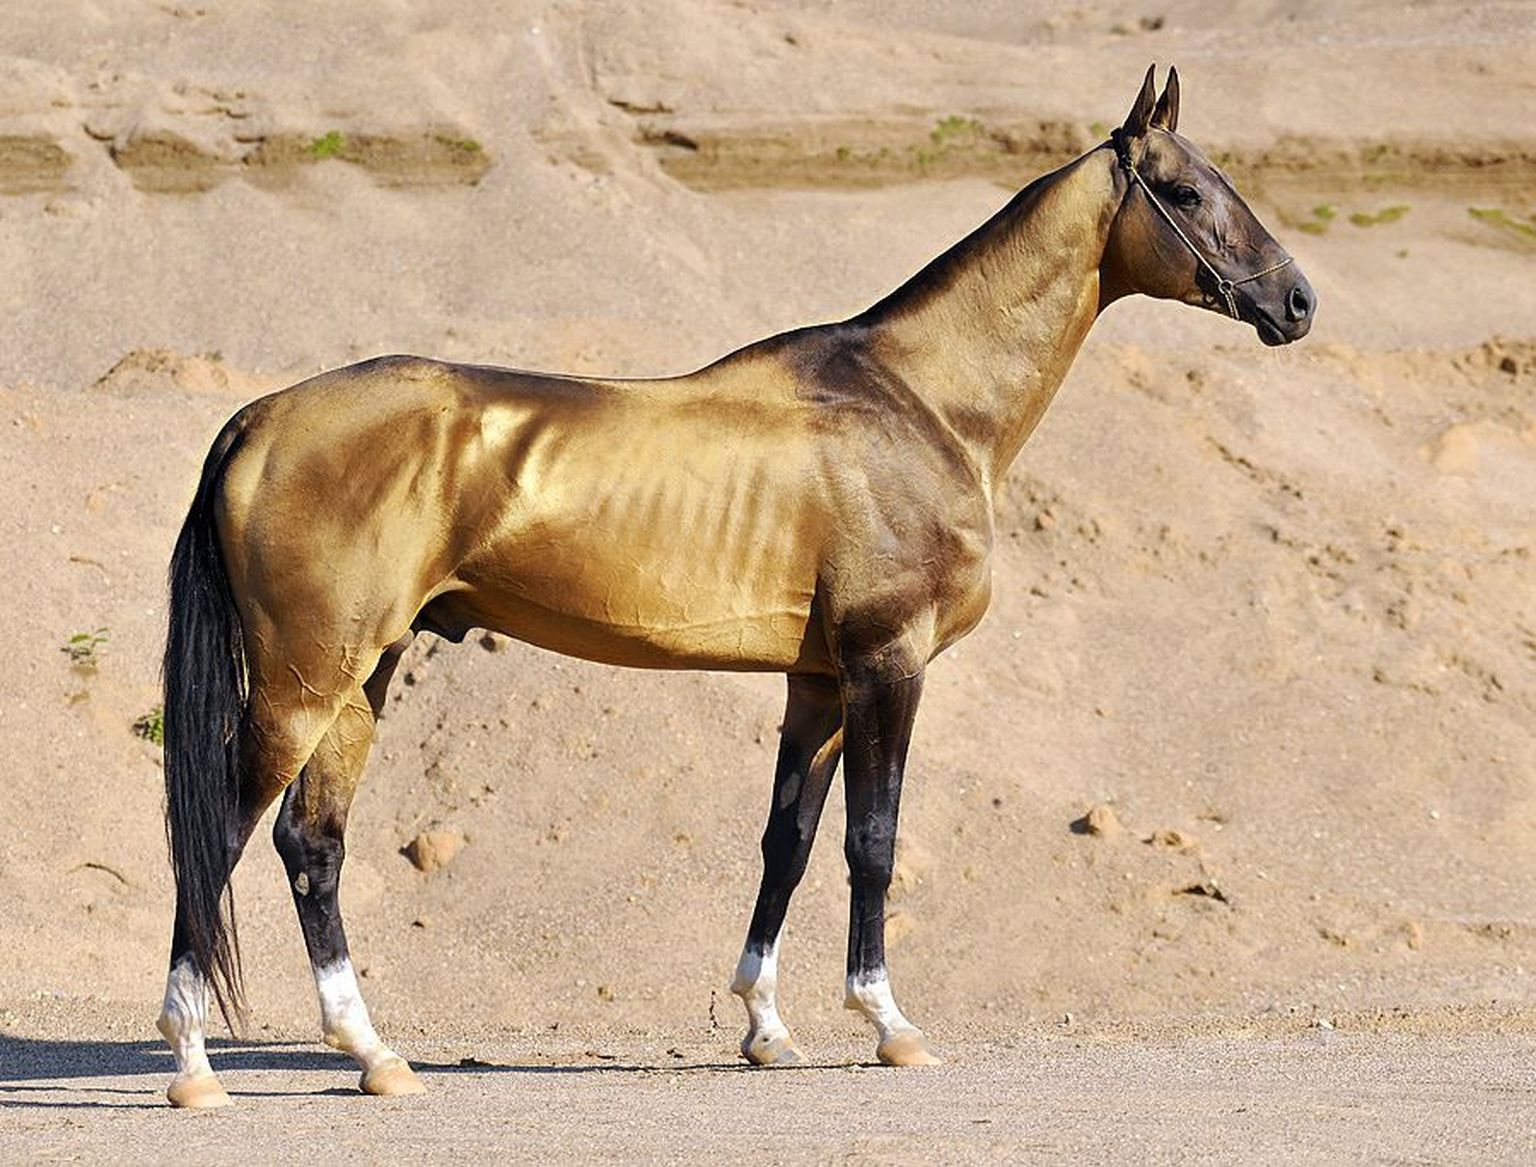 Ahhal-Tekiini hobune on iidsetele Turkomani hobustele lähim tänapäevane hobusetõug.